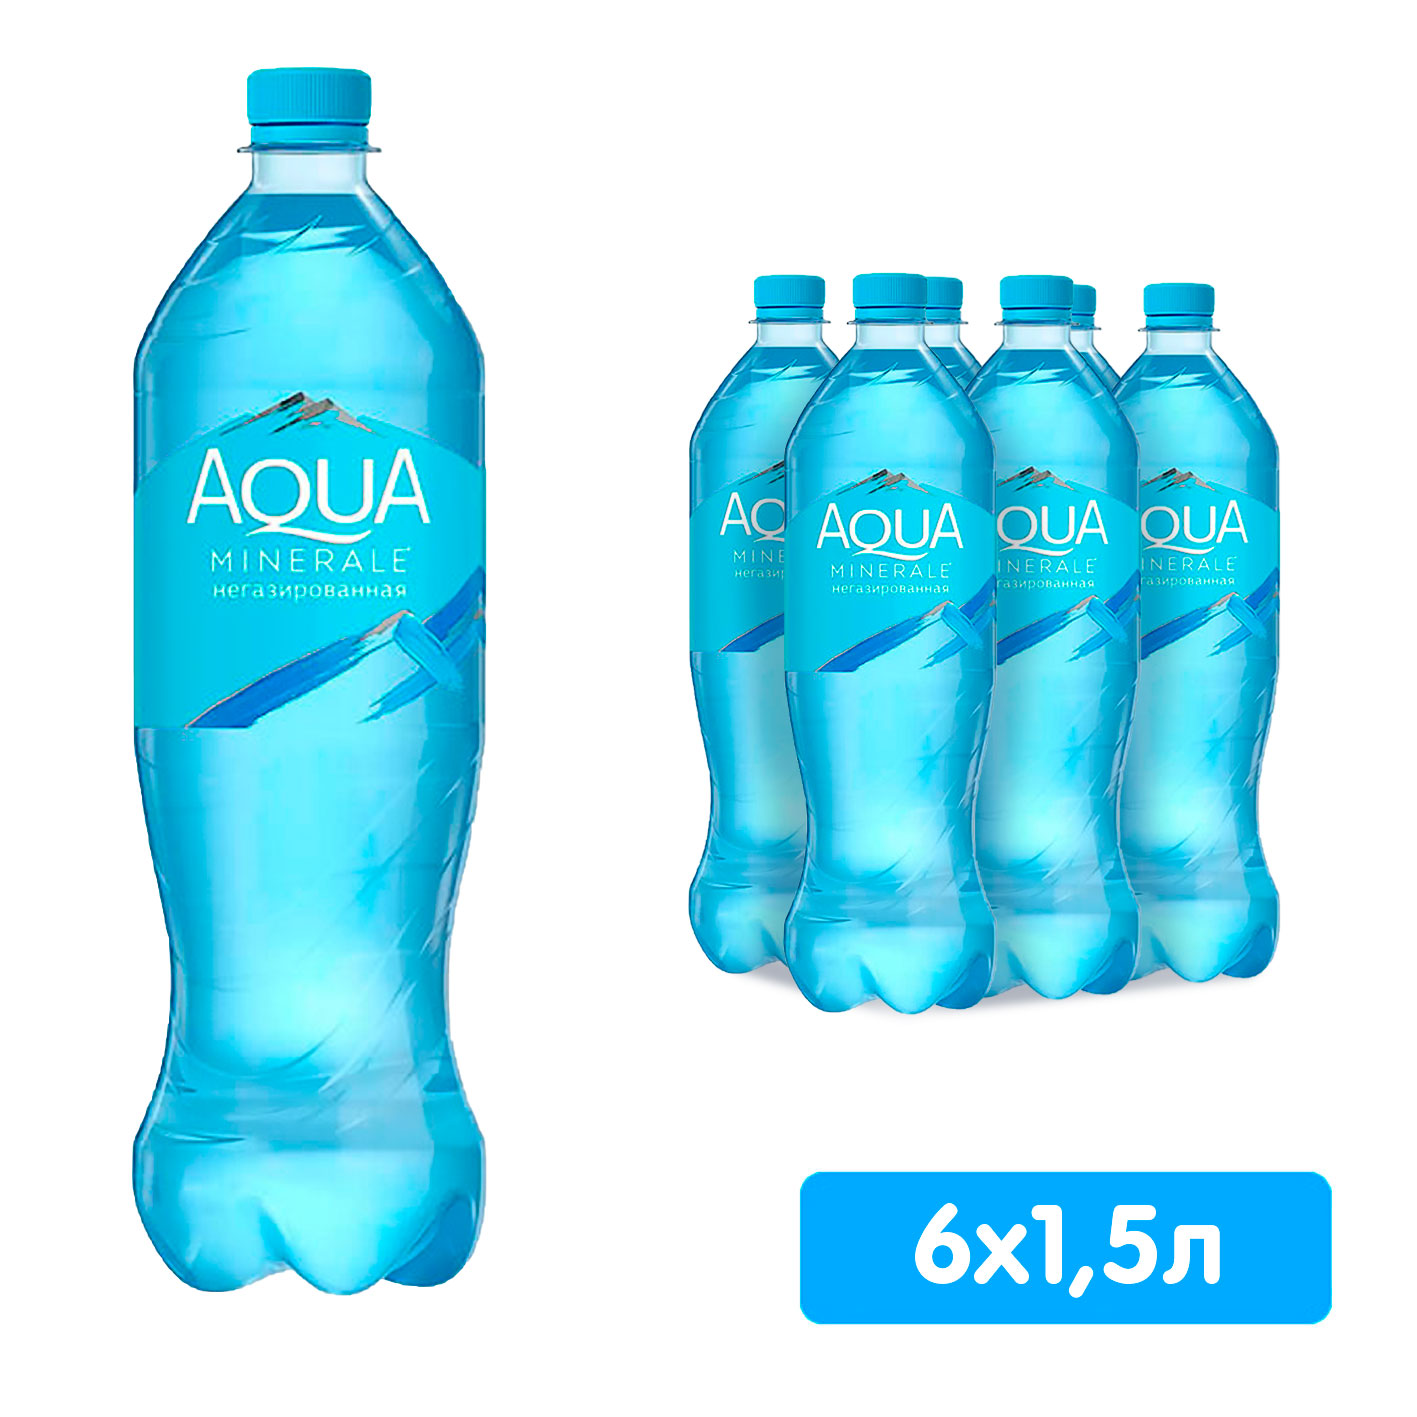 Вода Аква Минерале 1.5 литра, без газа, пэт, 6 шт. в уп Вода Аква Минерале 1.5 литра, без газа, пэт, 6 шт. в уп. - фото 1